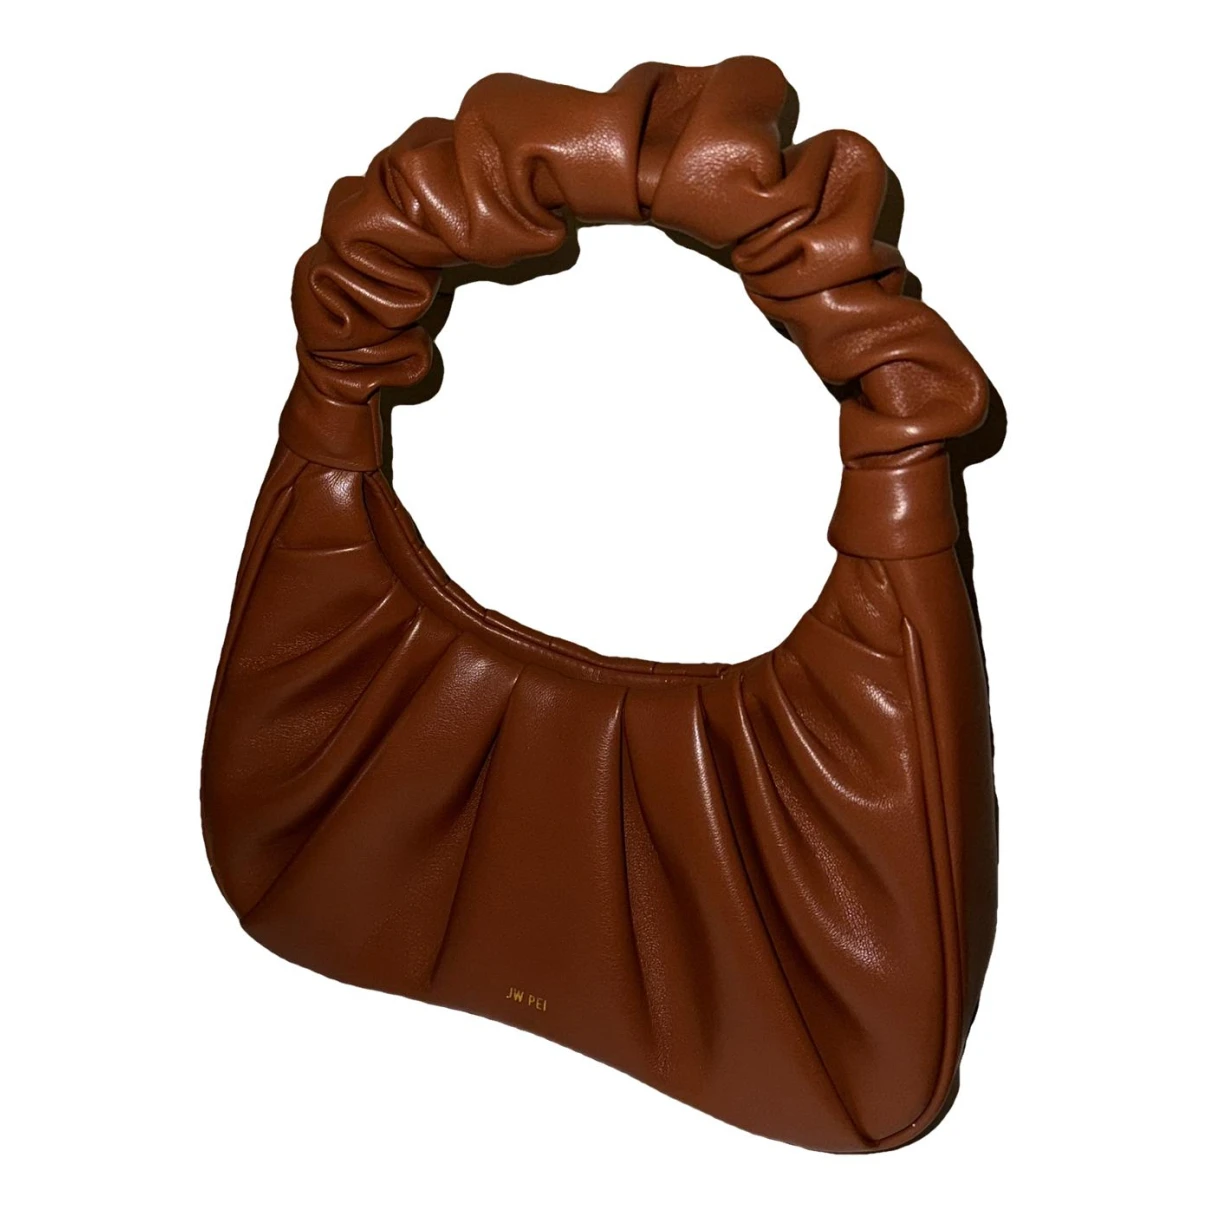 Pre-owned Jw Pei Faux Fur Handbag In Brown